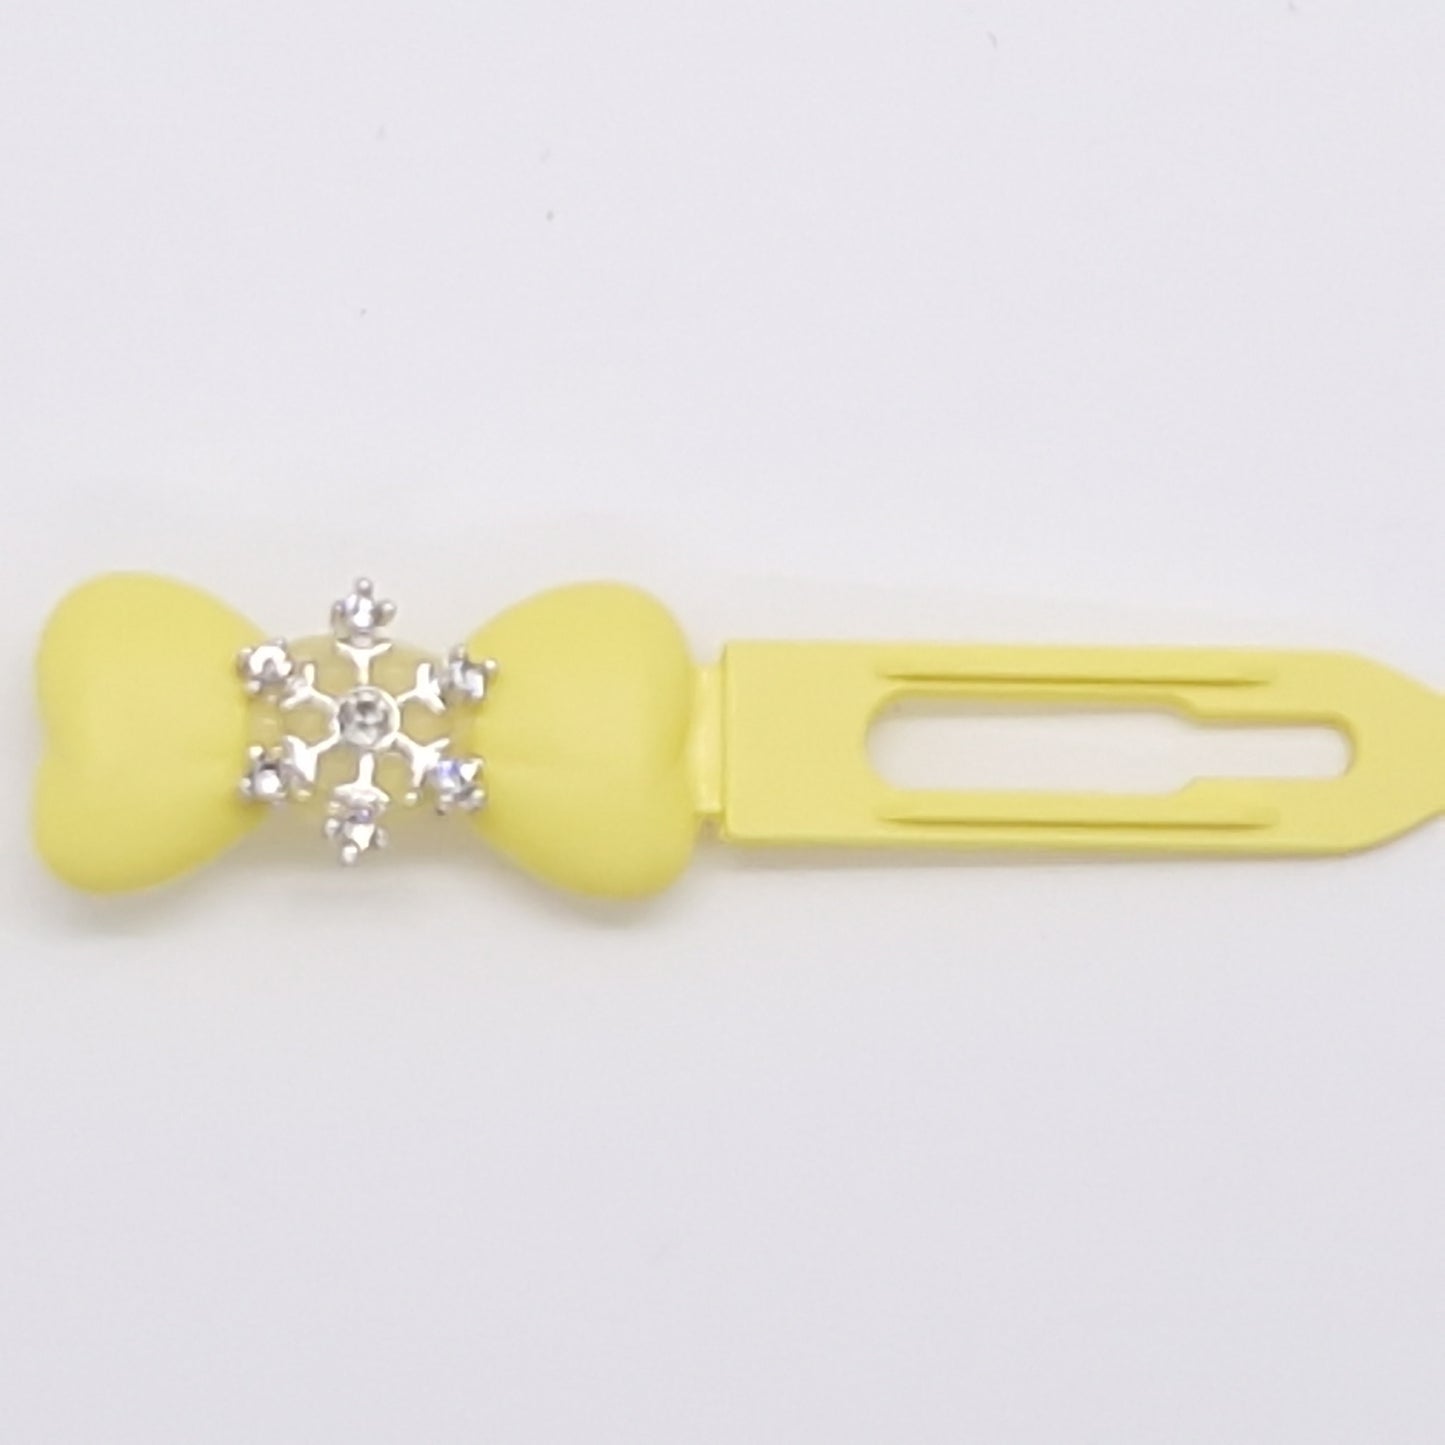 Weihnachts-Diamant-Schneeflocken-Haarspange mit 3,5 cm großem Neuheitsclip